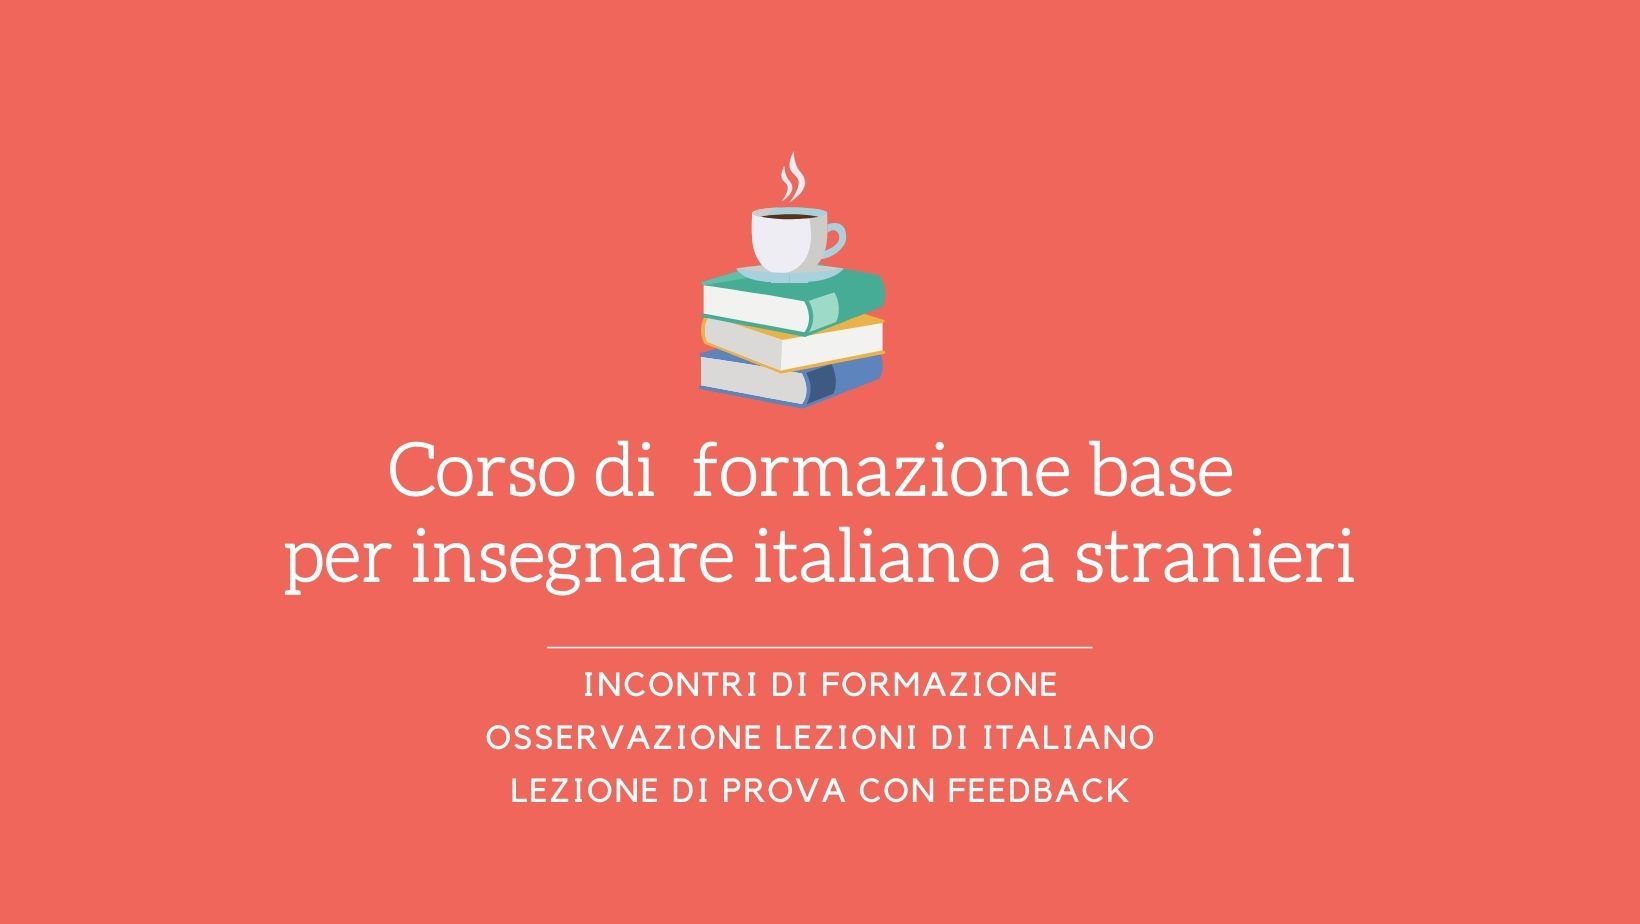 Scritta "Corso di formazione base per insegnare italiano"